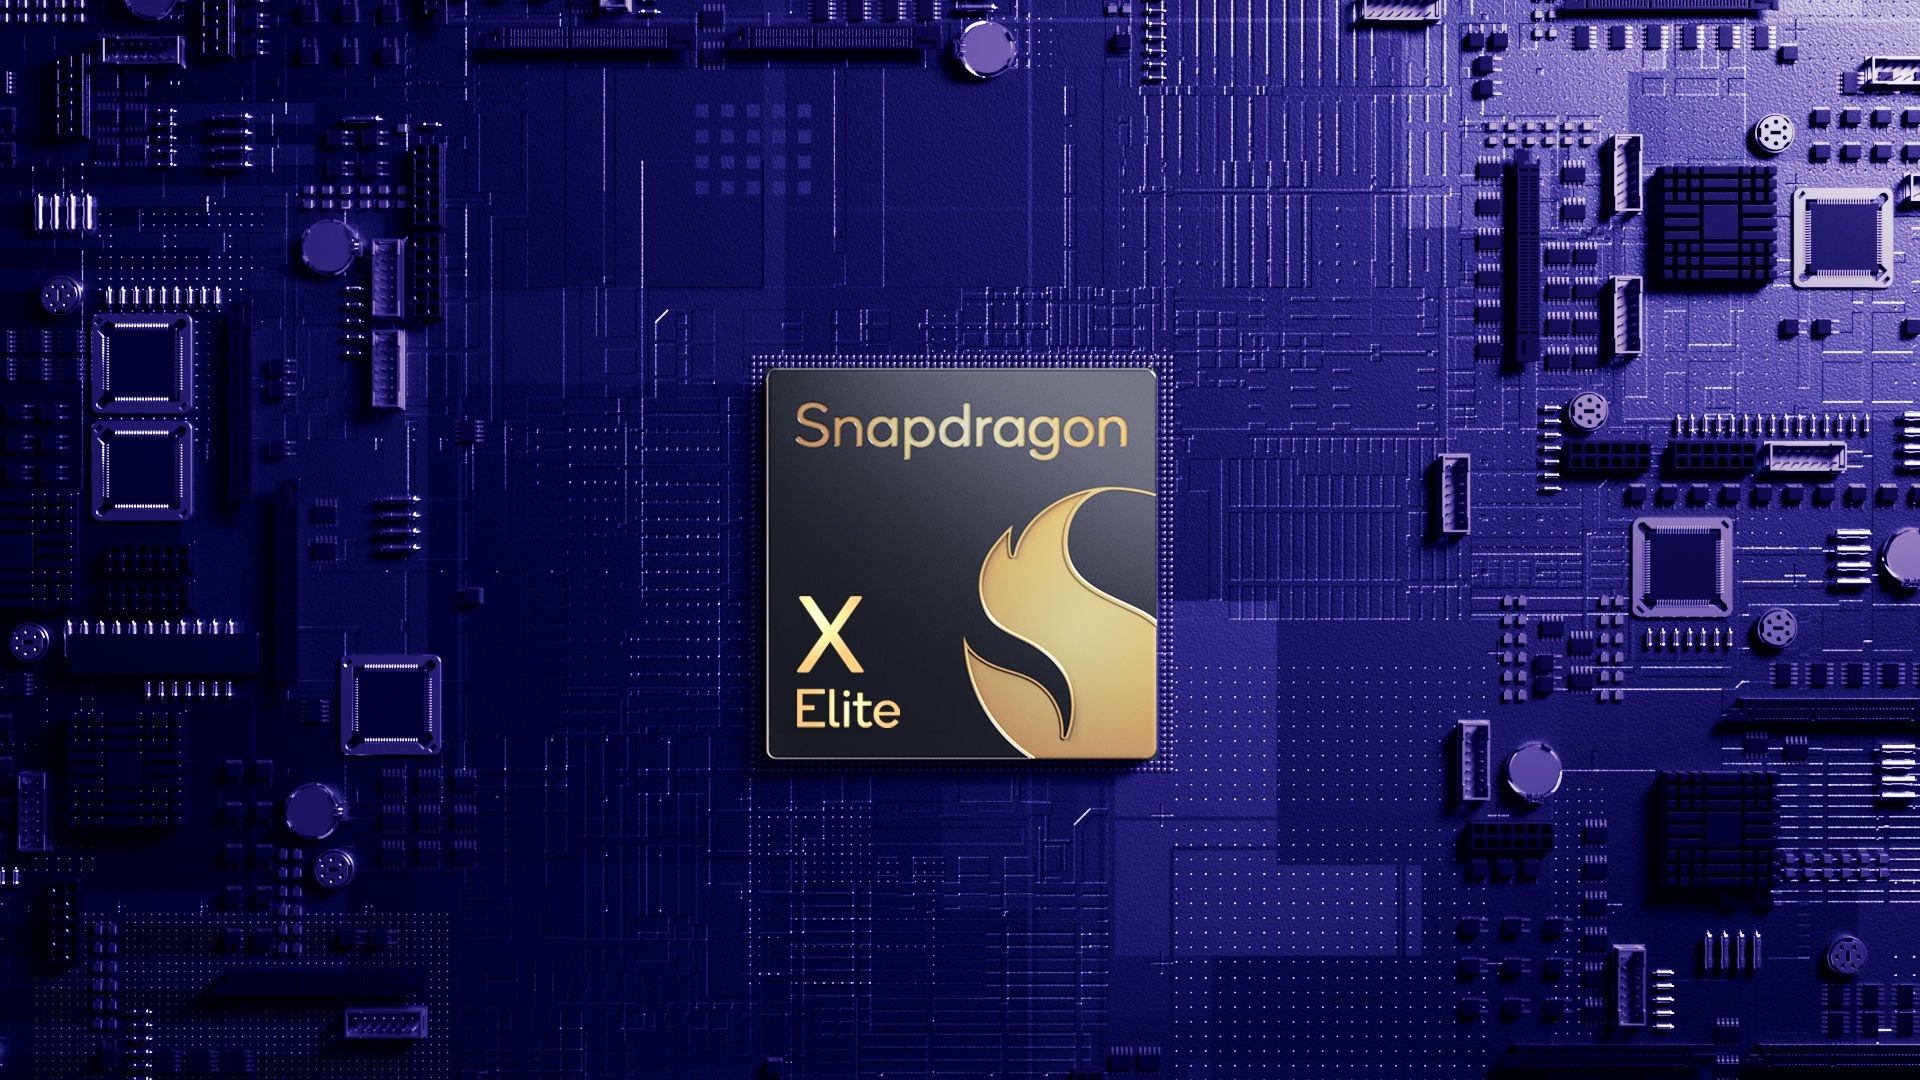 Qualcomm Snapdragon X Elite là gì: Mẫu chip ARM mạnh mẽ dành cho máy tính, laptop Windows cao cấp